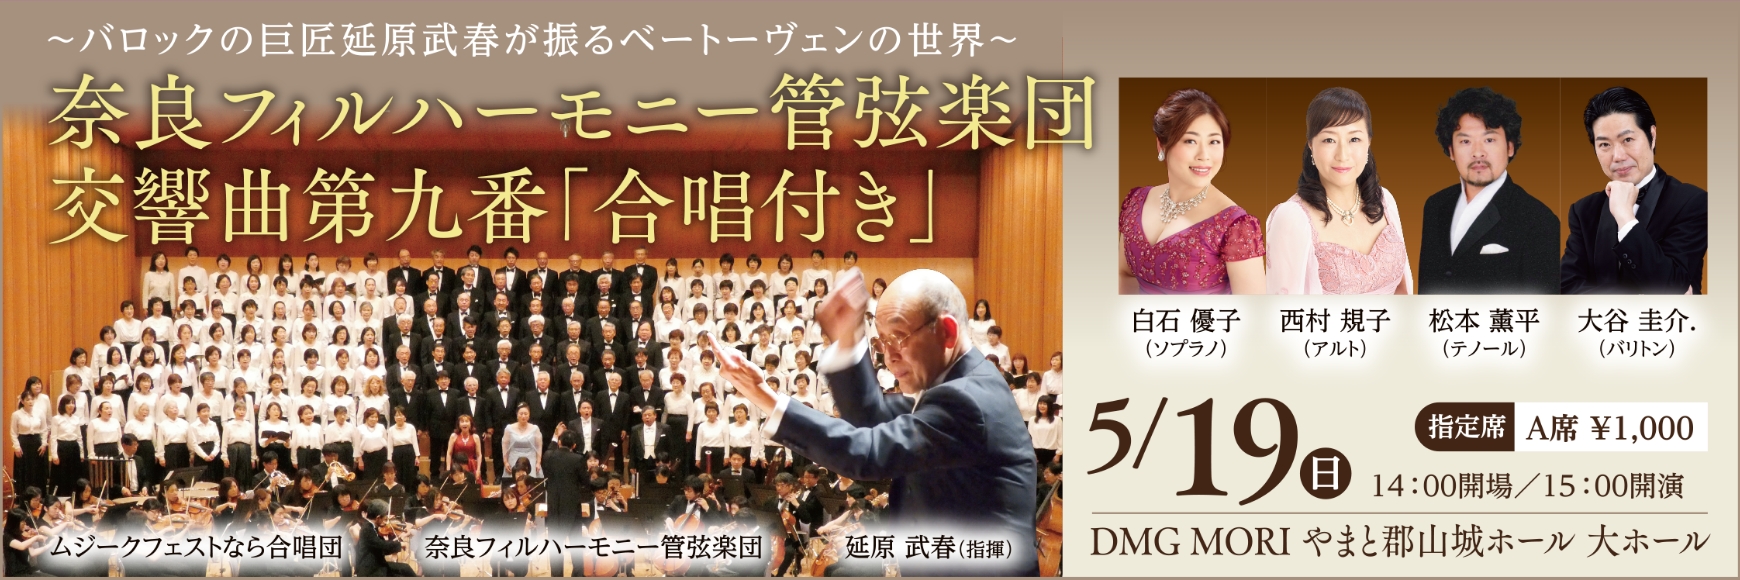 奈良フィルハーモニー管弦楽団 交響曲第九番「合唱付き」